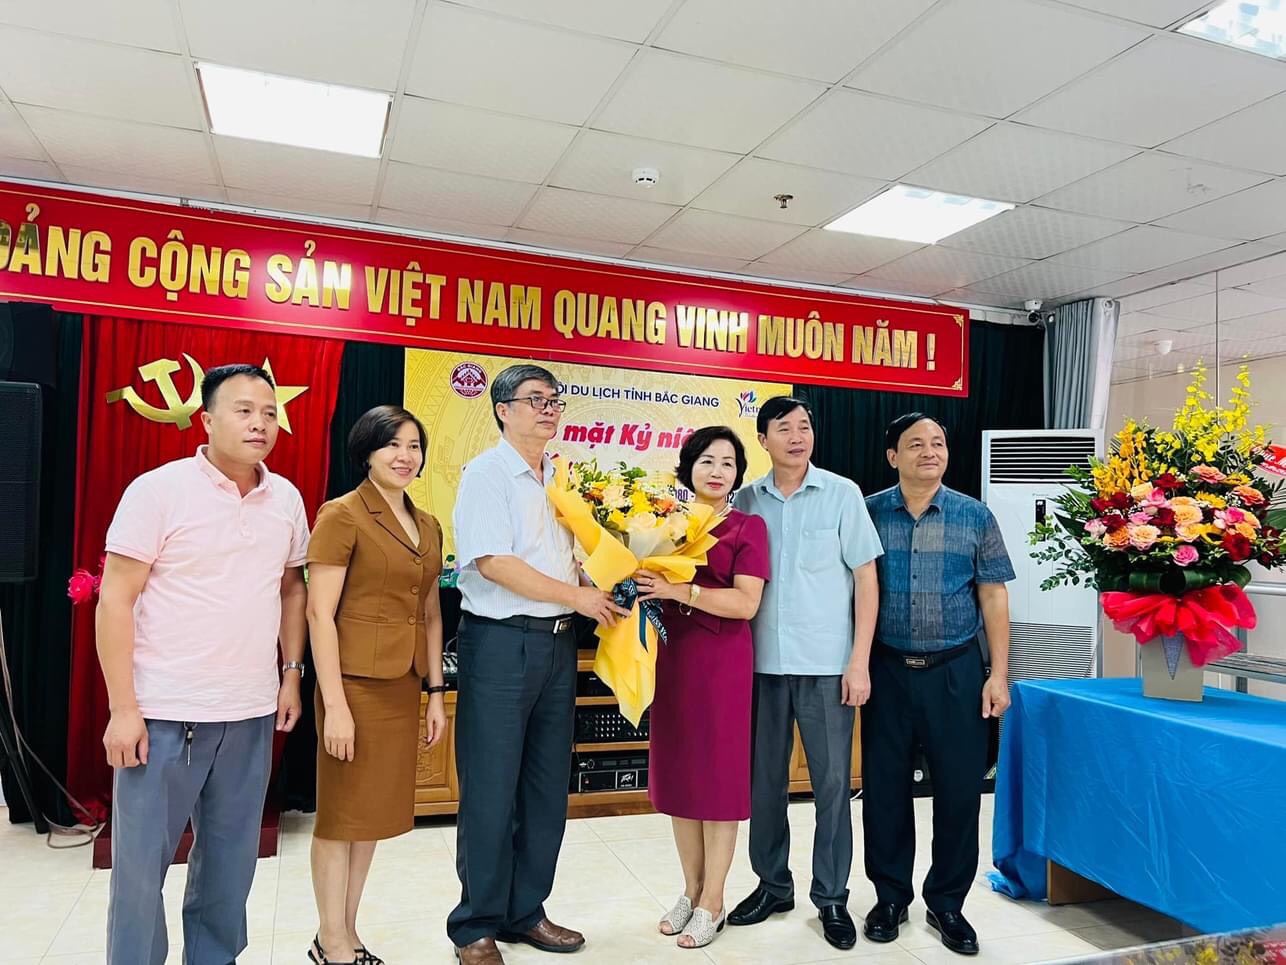 Hiệp hội Du lịch tỉnh Bắc Giang tổ chức hội nghị sơ kết 9 tháng và gặp mặt hội viên nhân kỷ niệm 42 năm kỷ niệm ngày du lịch thế giới